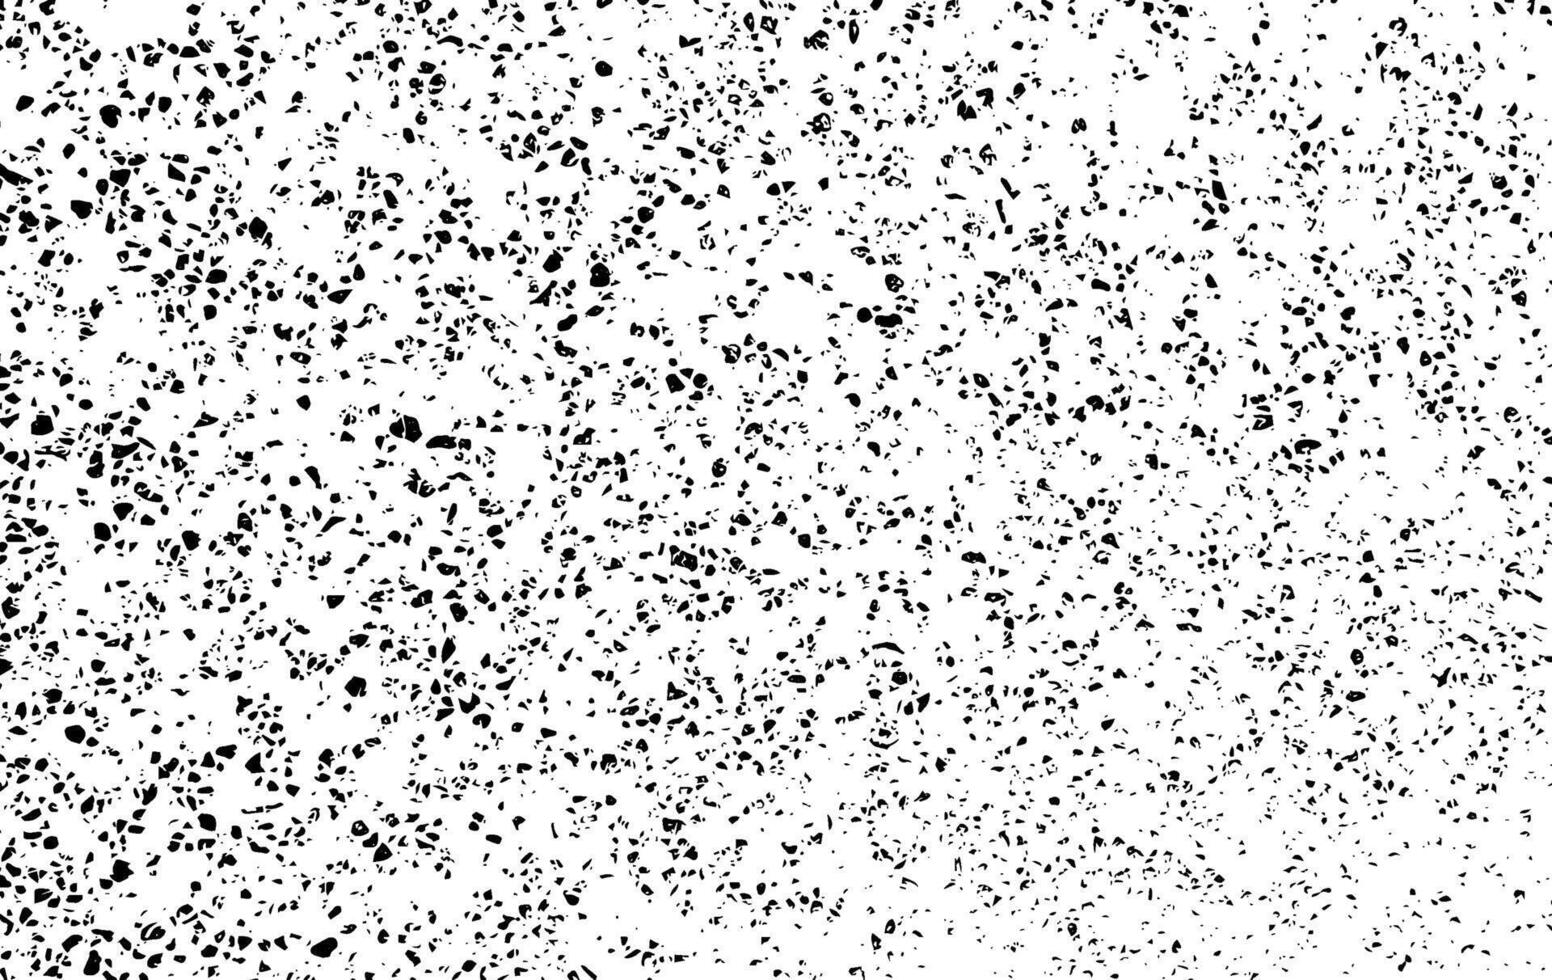 uma Preto e branco vetor do uma branco fundo com uma muitos do pontos, grunge textura fundo vetor com vintage ponto efeito